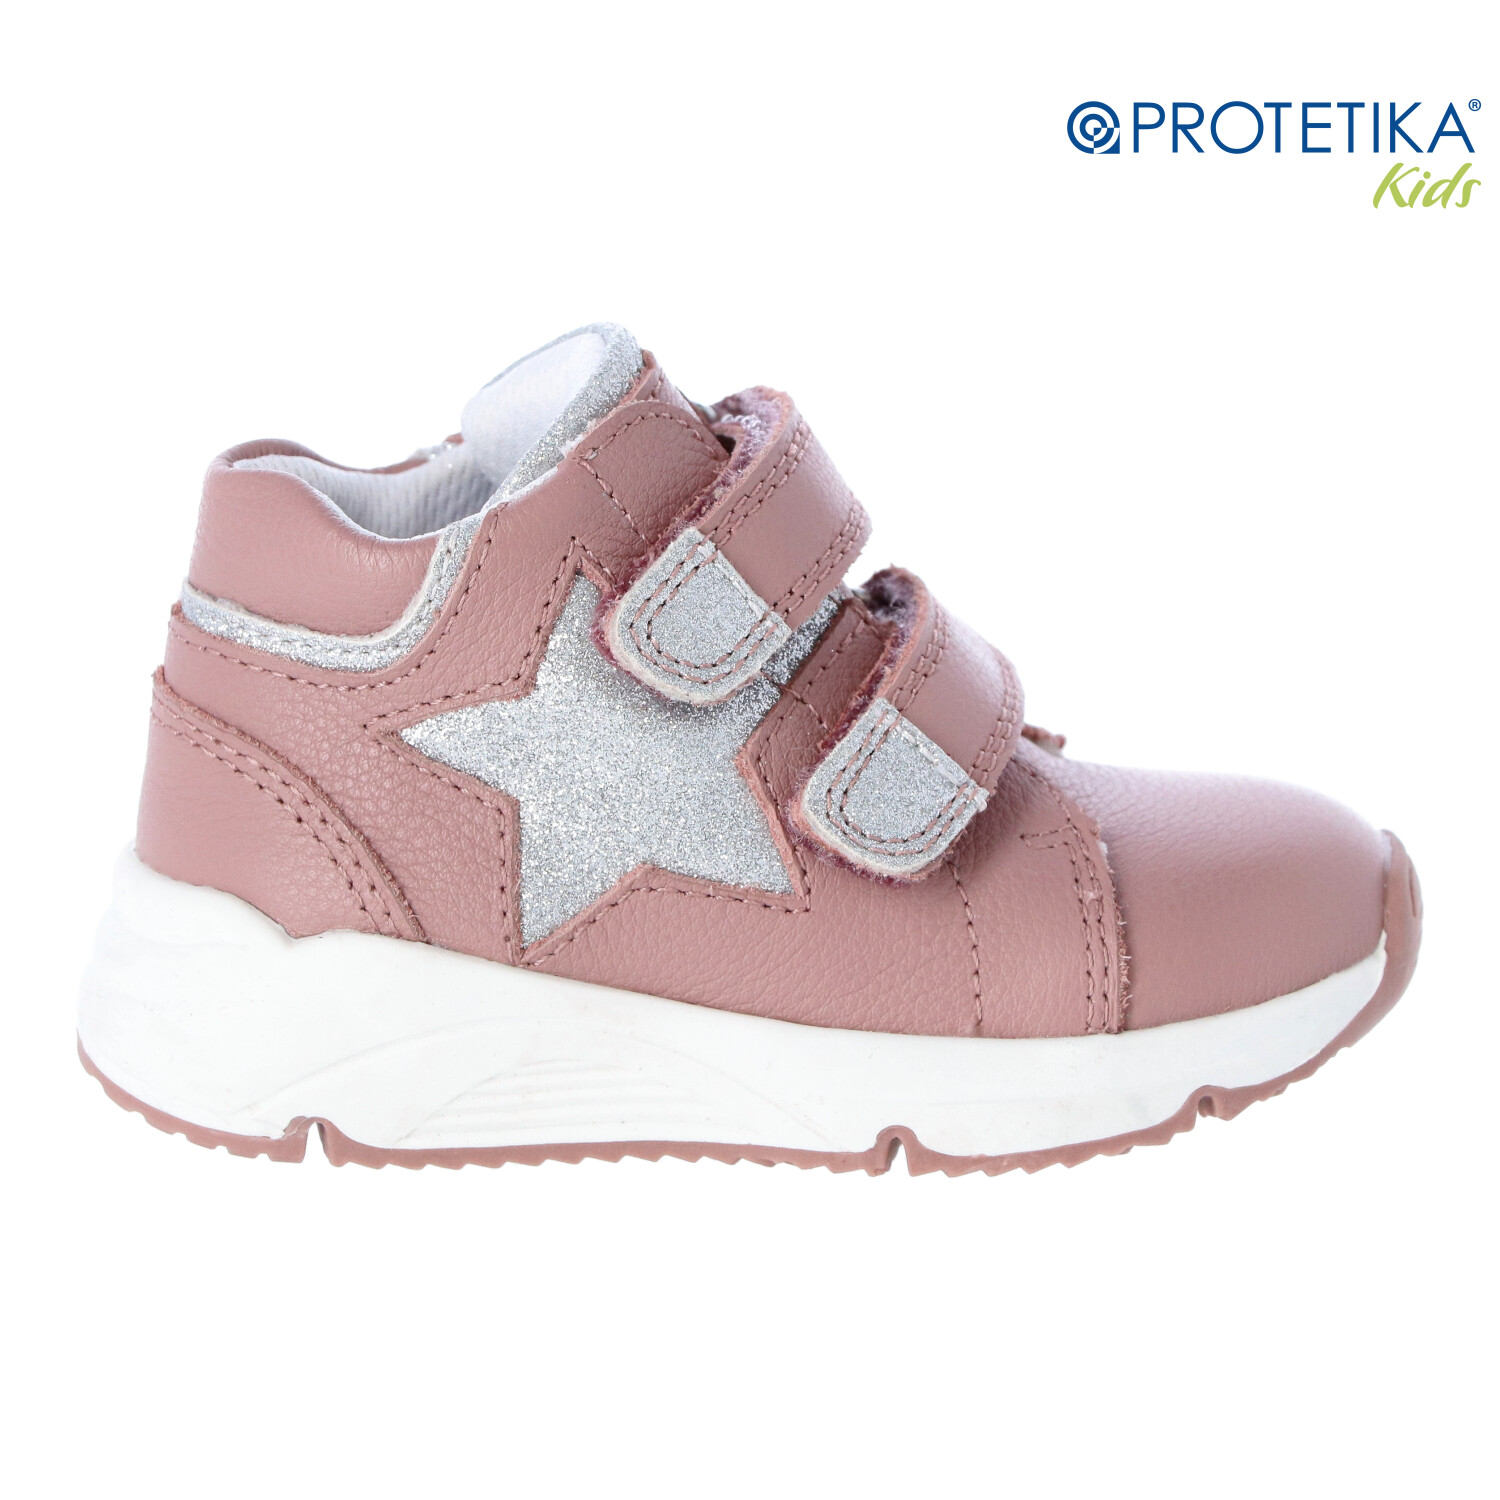 Protetika - topánky ADINA pink